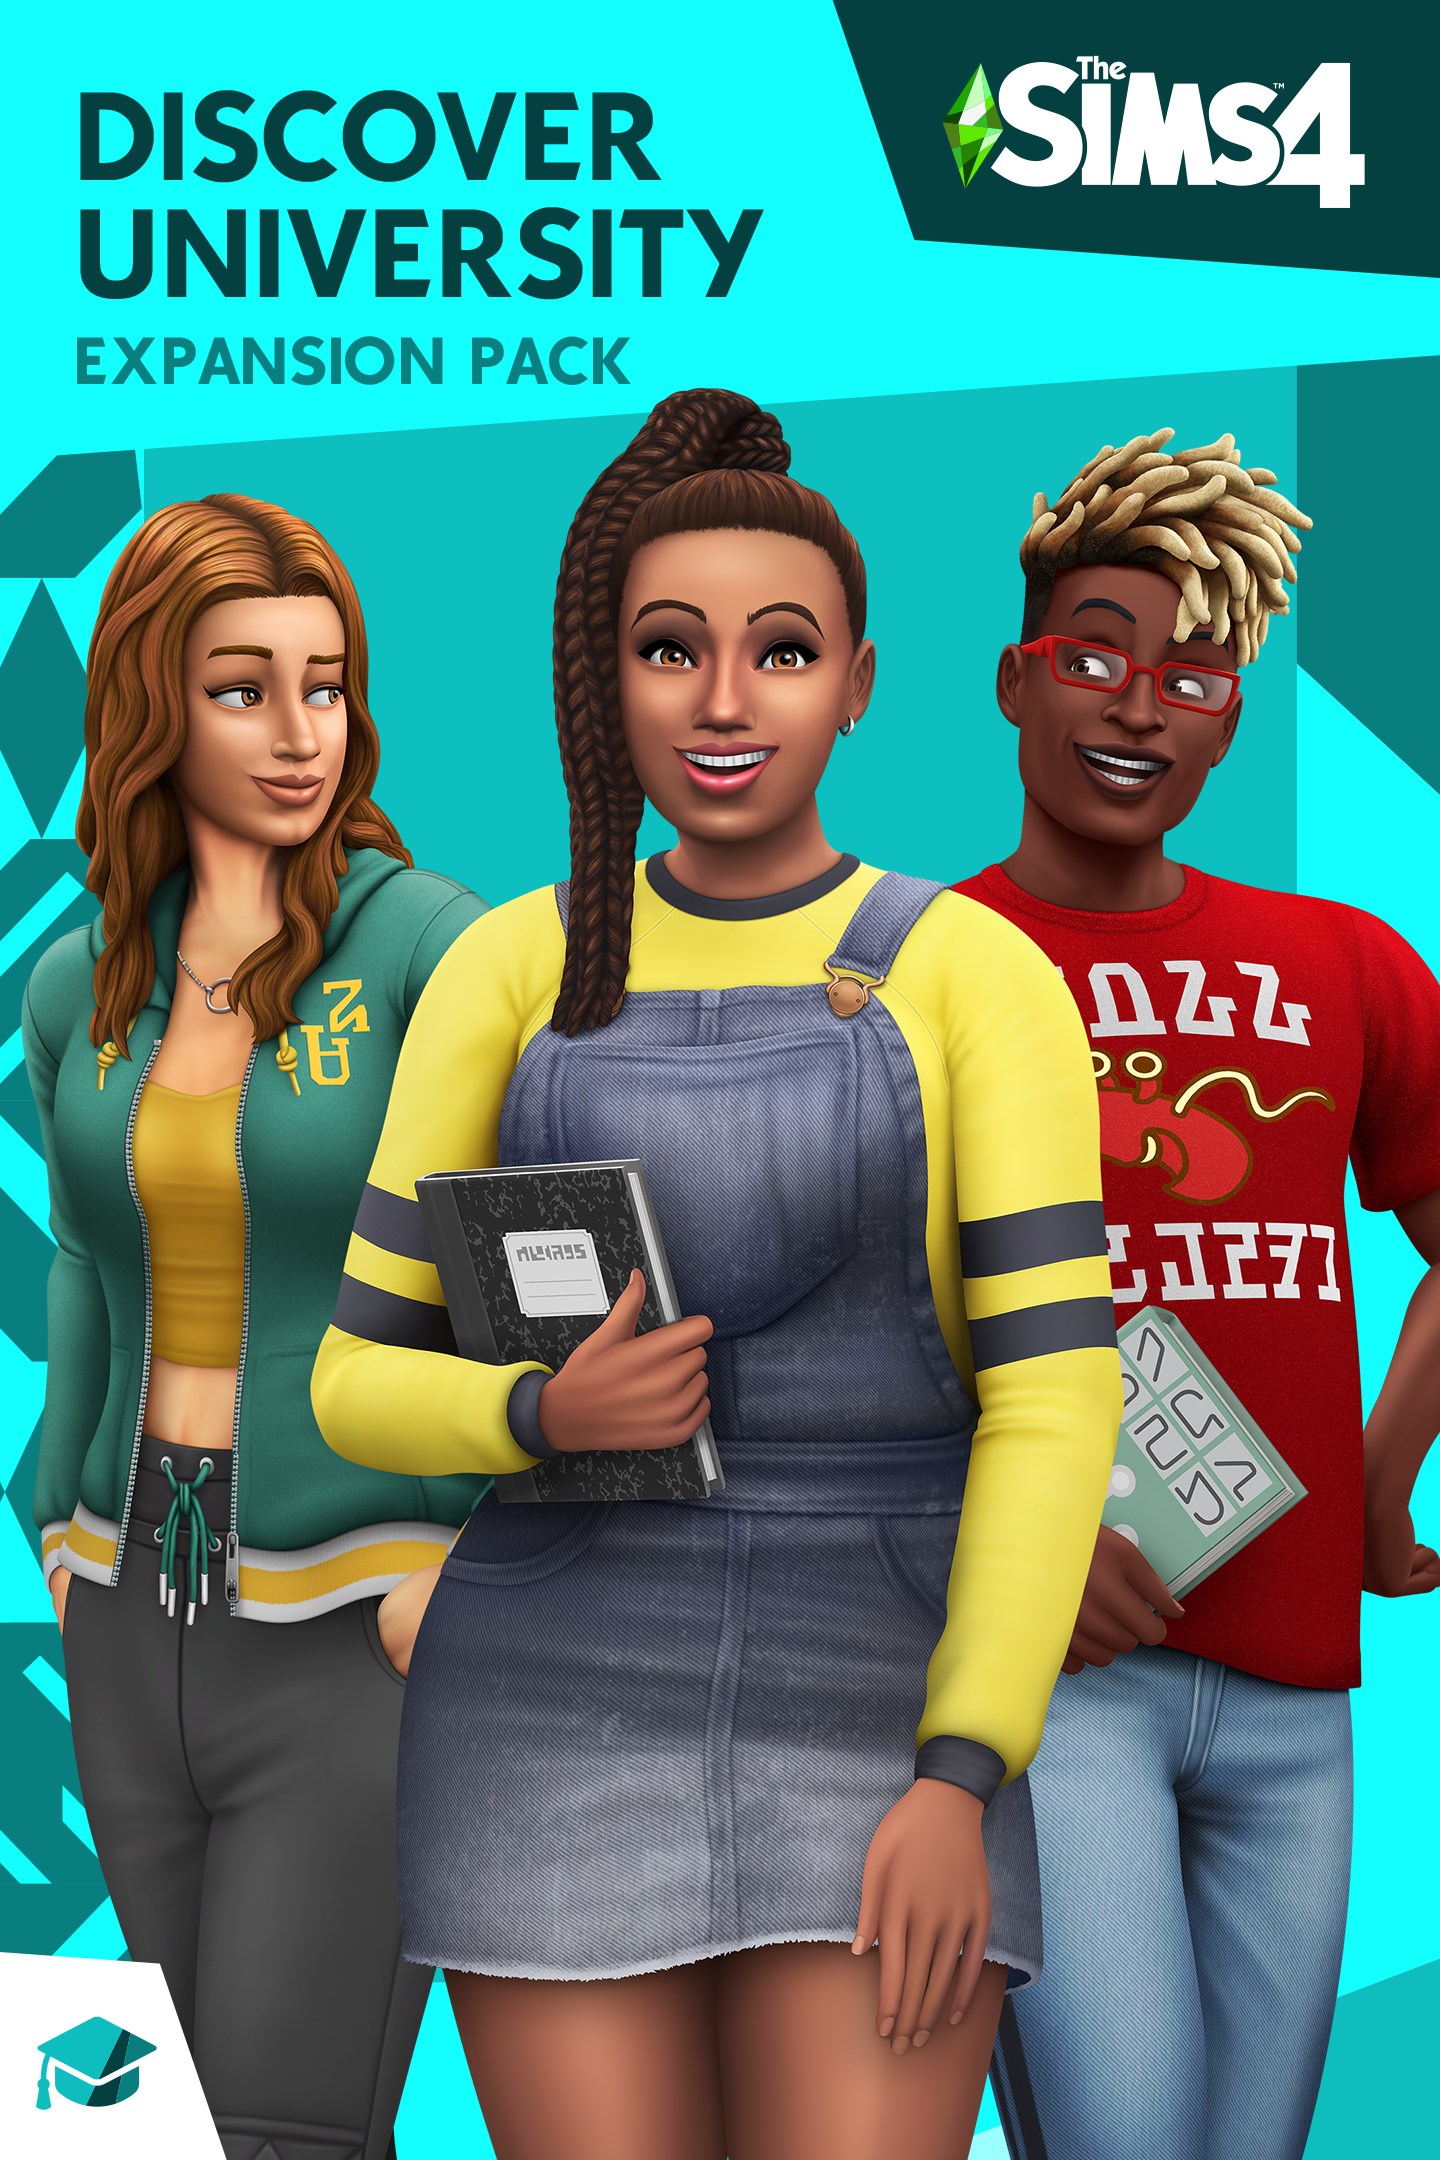 La clase está en sesión con Los Sims 4 Descubre la Universidad